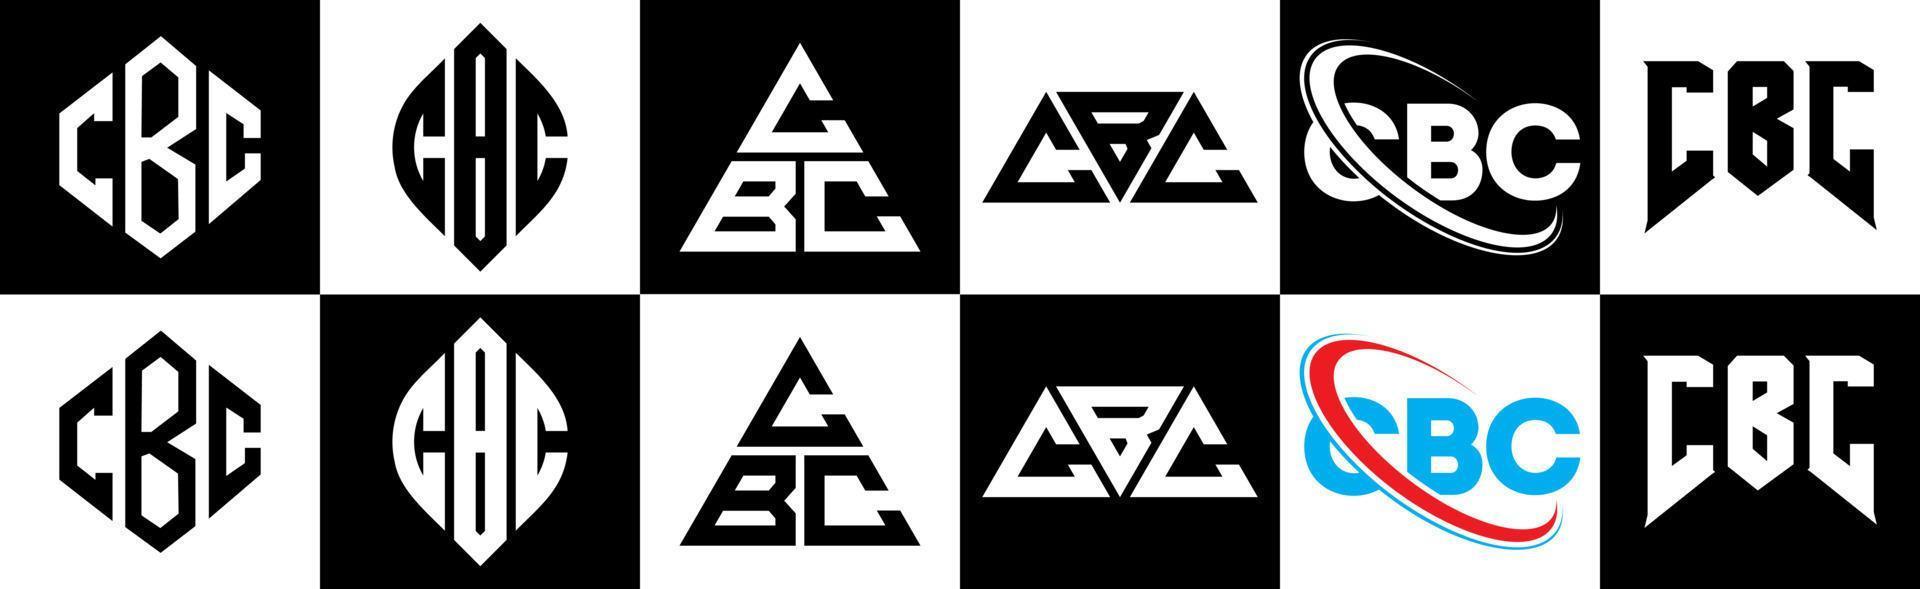 CBC-Brief-Logo-Design in sechs Stilen. CBC-Polygon, Kreis, Dreieck, Sechseck, flacher und einfacher Stil mit schwarz-weißem Buchstabenlogo in einer Zeichenfläche. CBC minimalistisches und klassisches Logo vektor